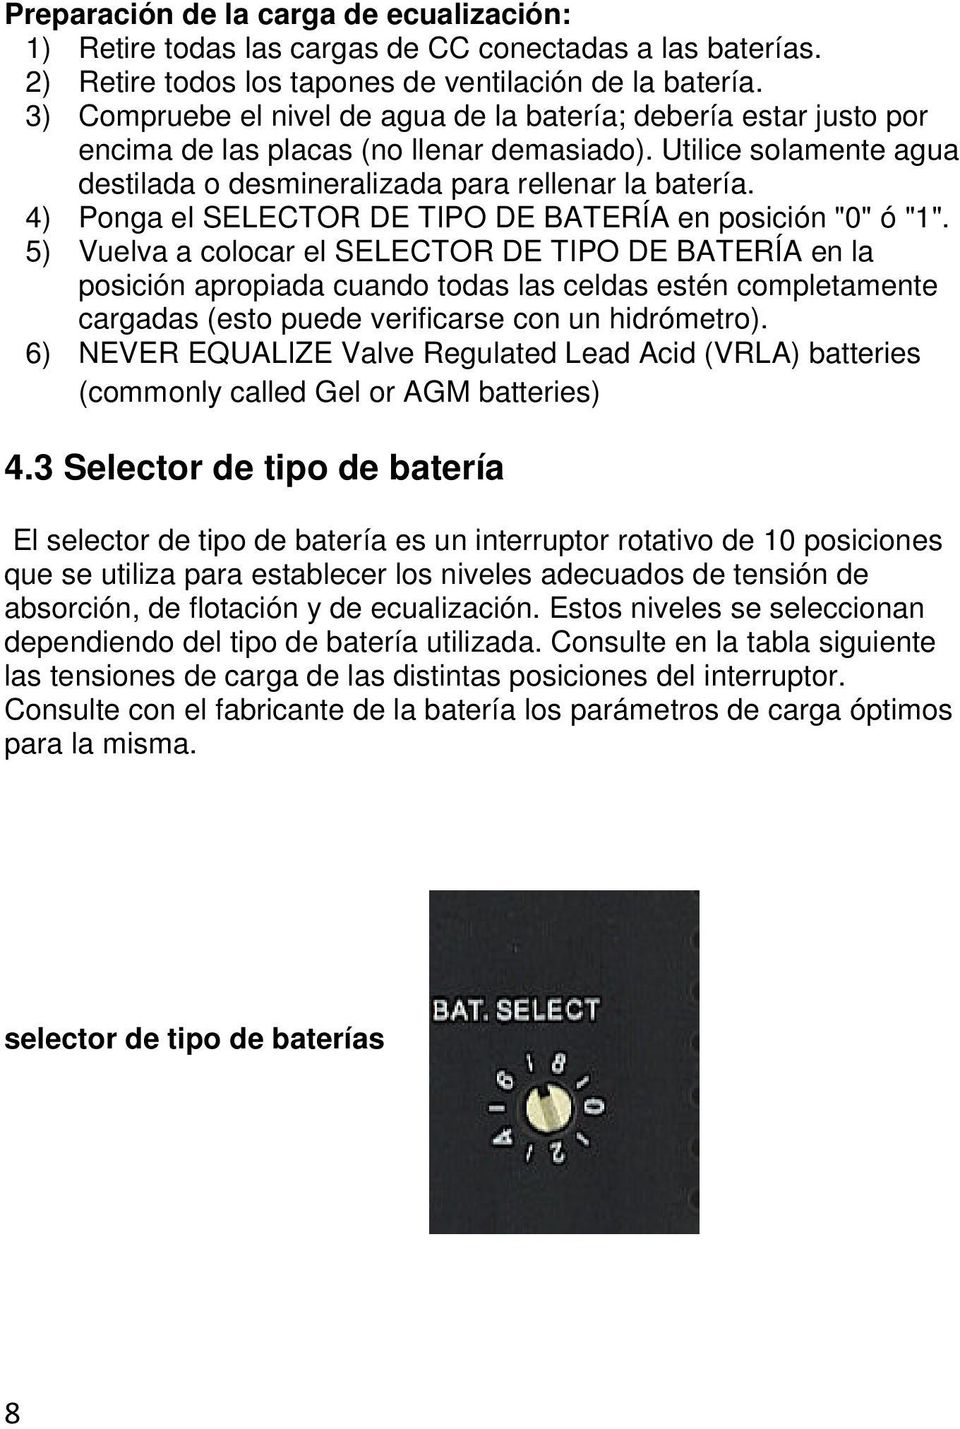 4) Ponga el SELECTOR DE TIPO DE BATERÍA en posición "0" ó "1".